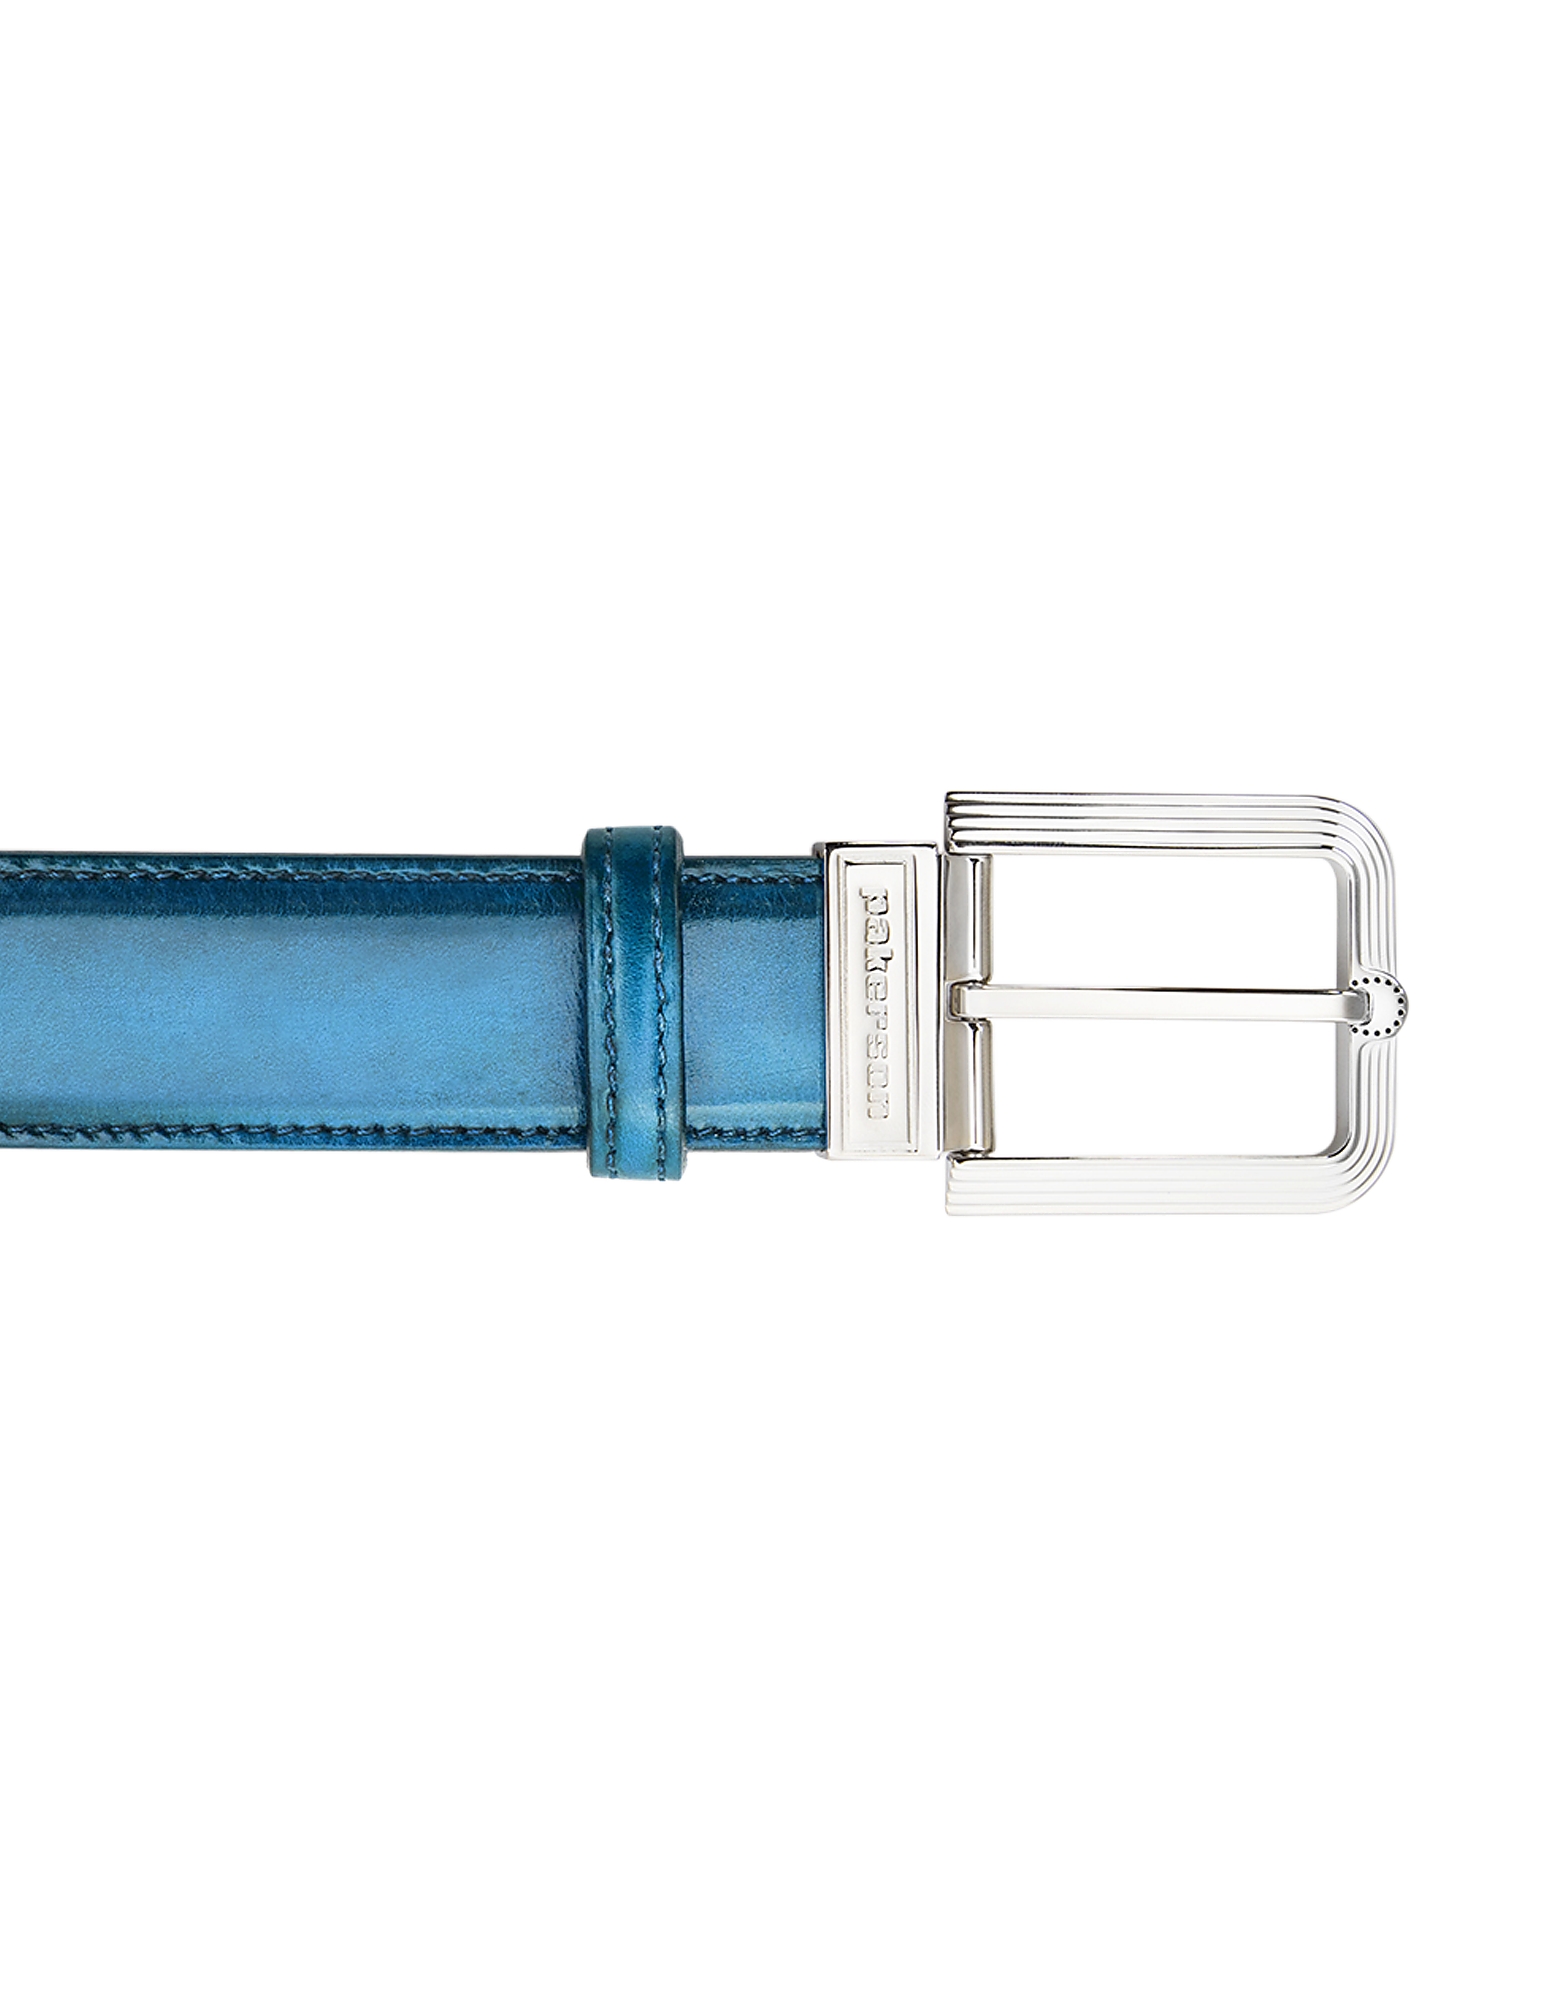 

Fiesole Blue Bay Italian Leather Belt w/ Silver Buckle, Light blue